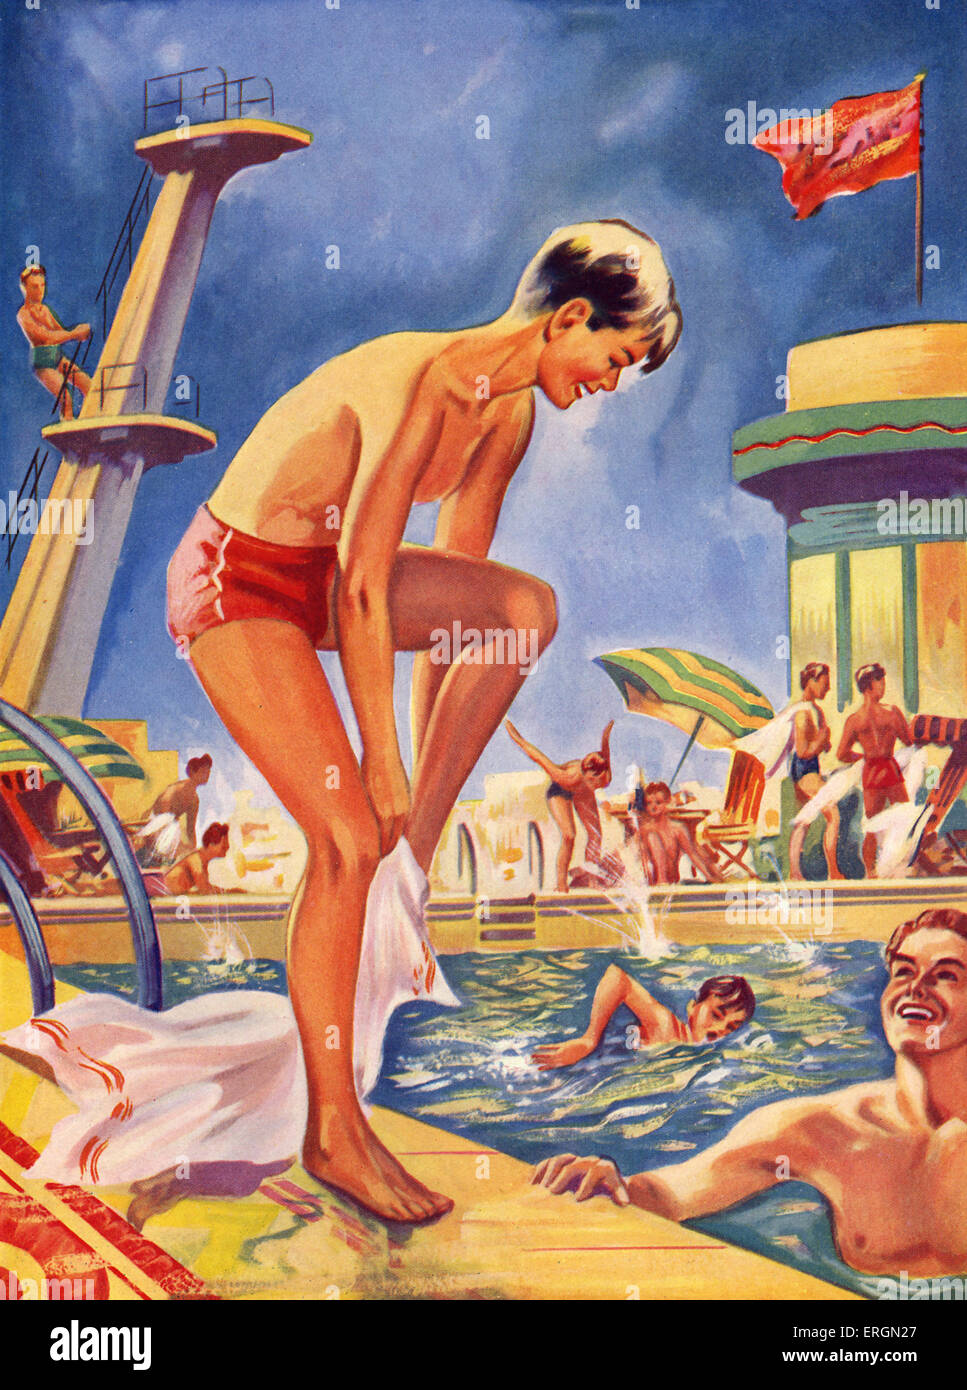 Lido schwimmen pool 1930er Jahren Illsutration aus den späten 1930er Jahren Künstler aus Wonder Book Serie nicht bekannt Stockfoto